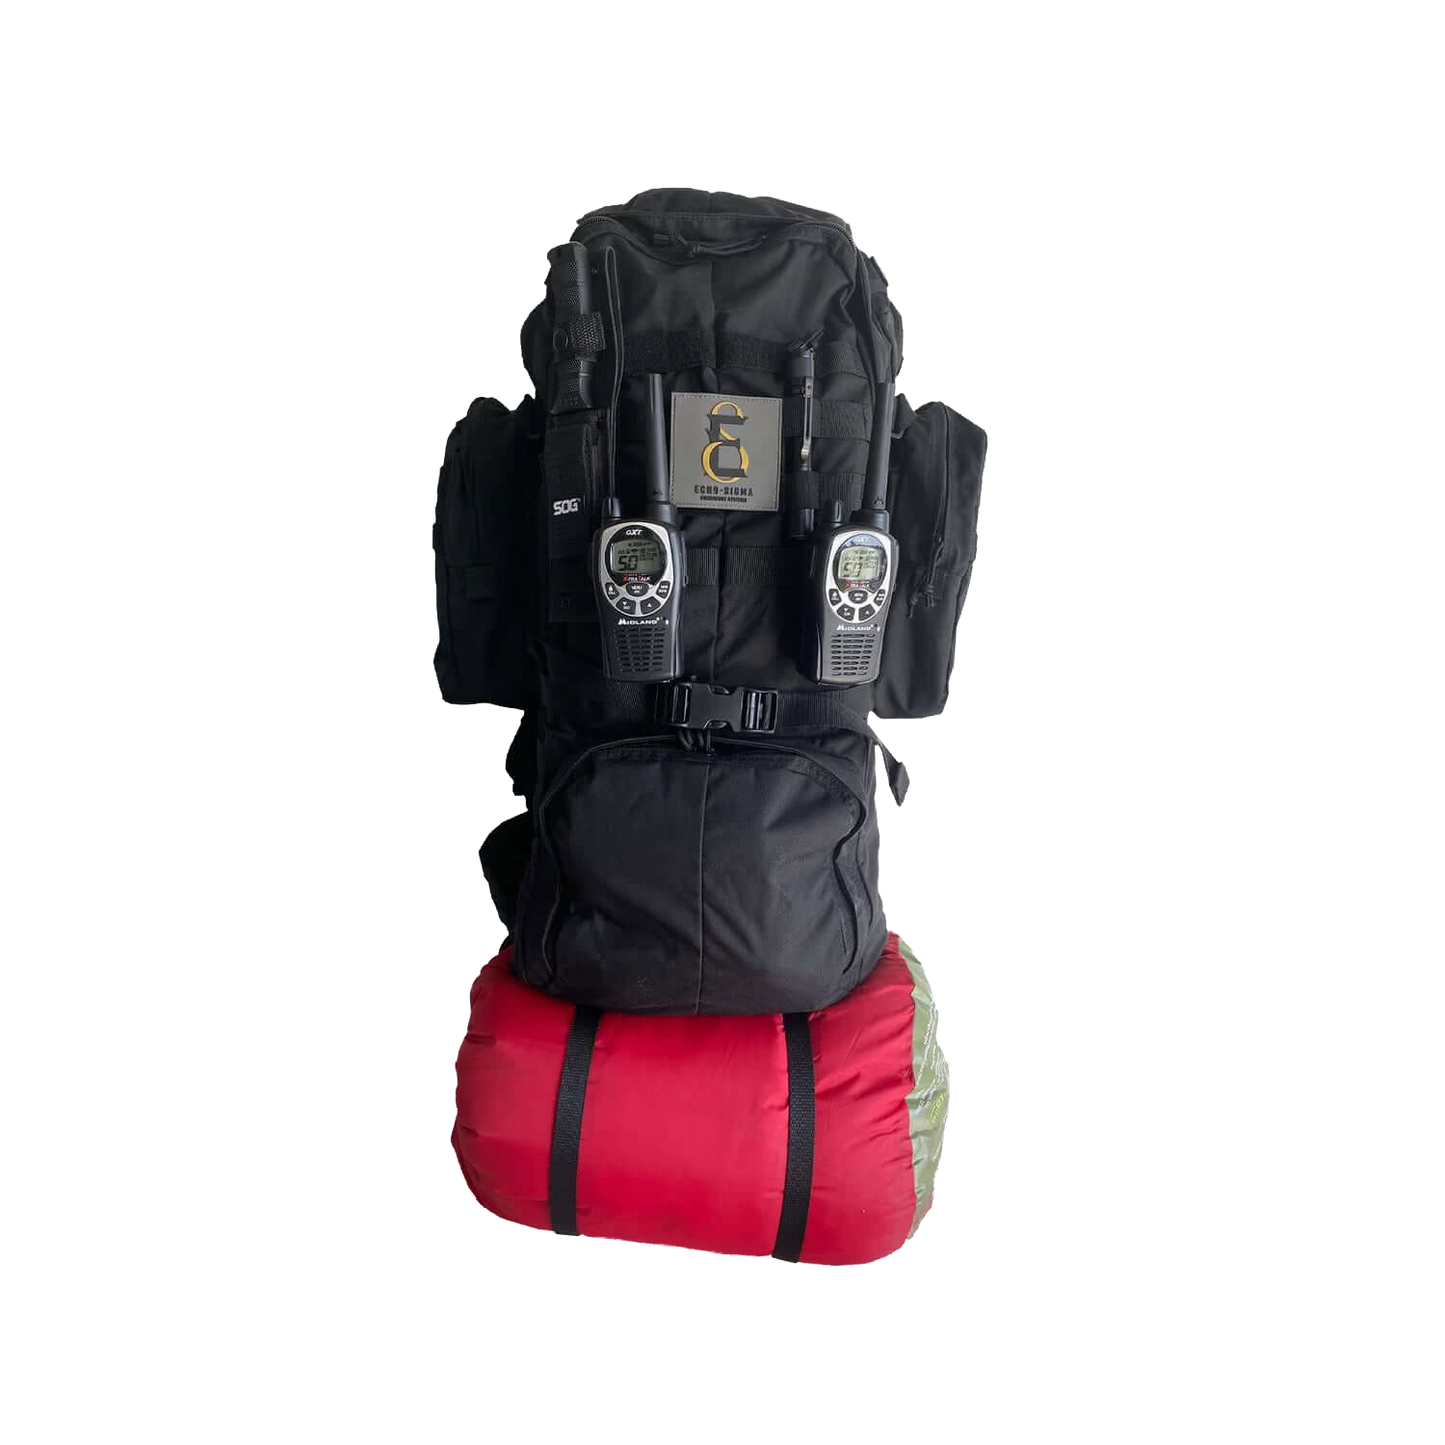 Preparedness Life 5.11 “Get Lost” Premium Survival Bag + GPS